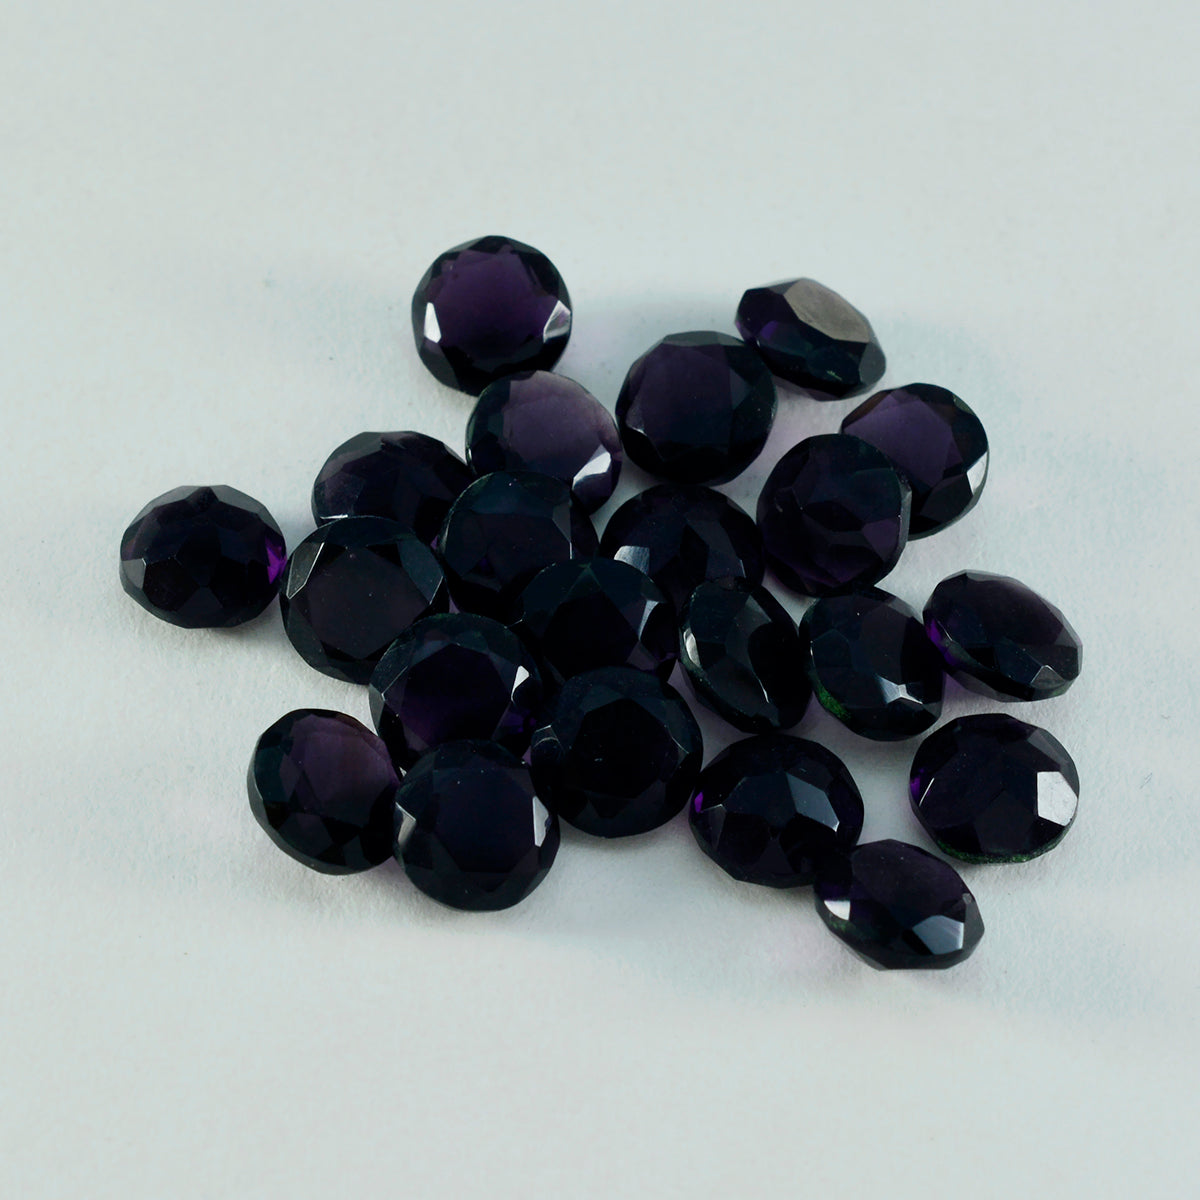 Riyogems 1 Stück violetter Amethyst mit CZ, facettiert, 8 x 8 mm, runde Form, gut aussehender, hochwertiger loser Stein